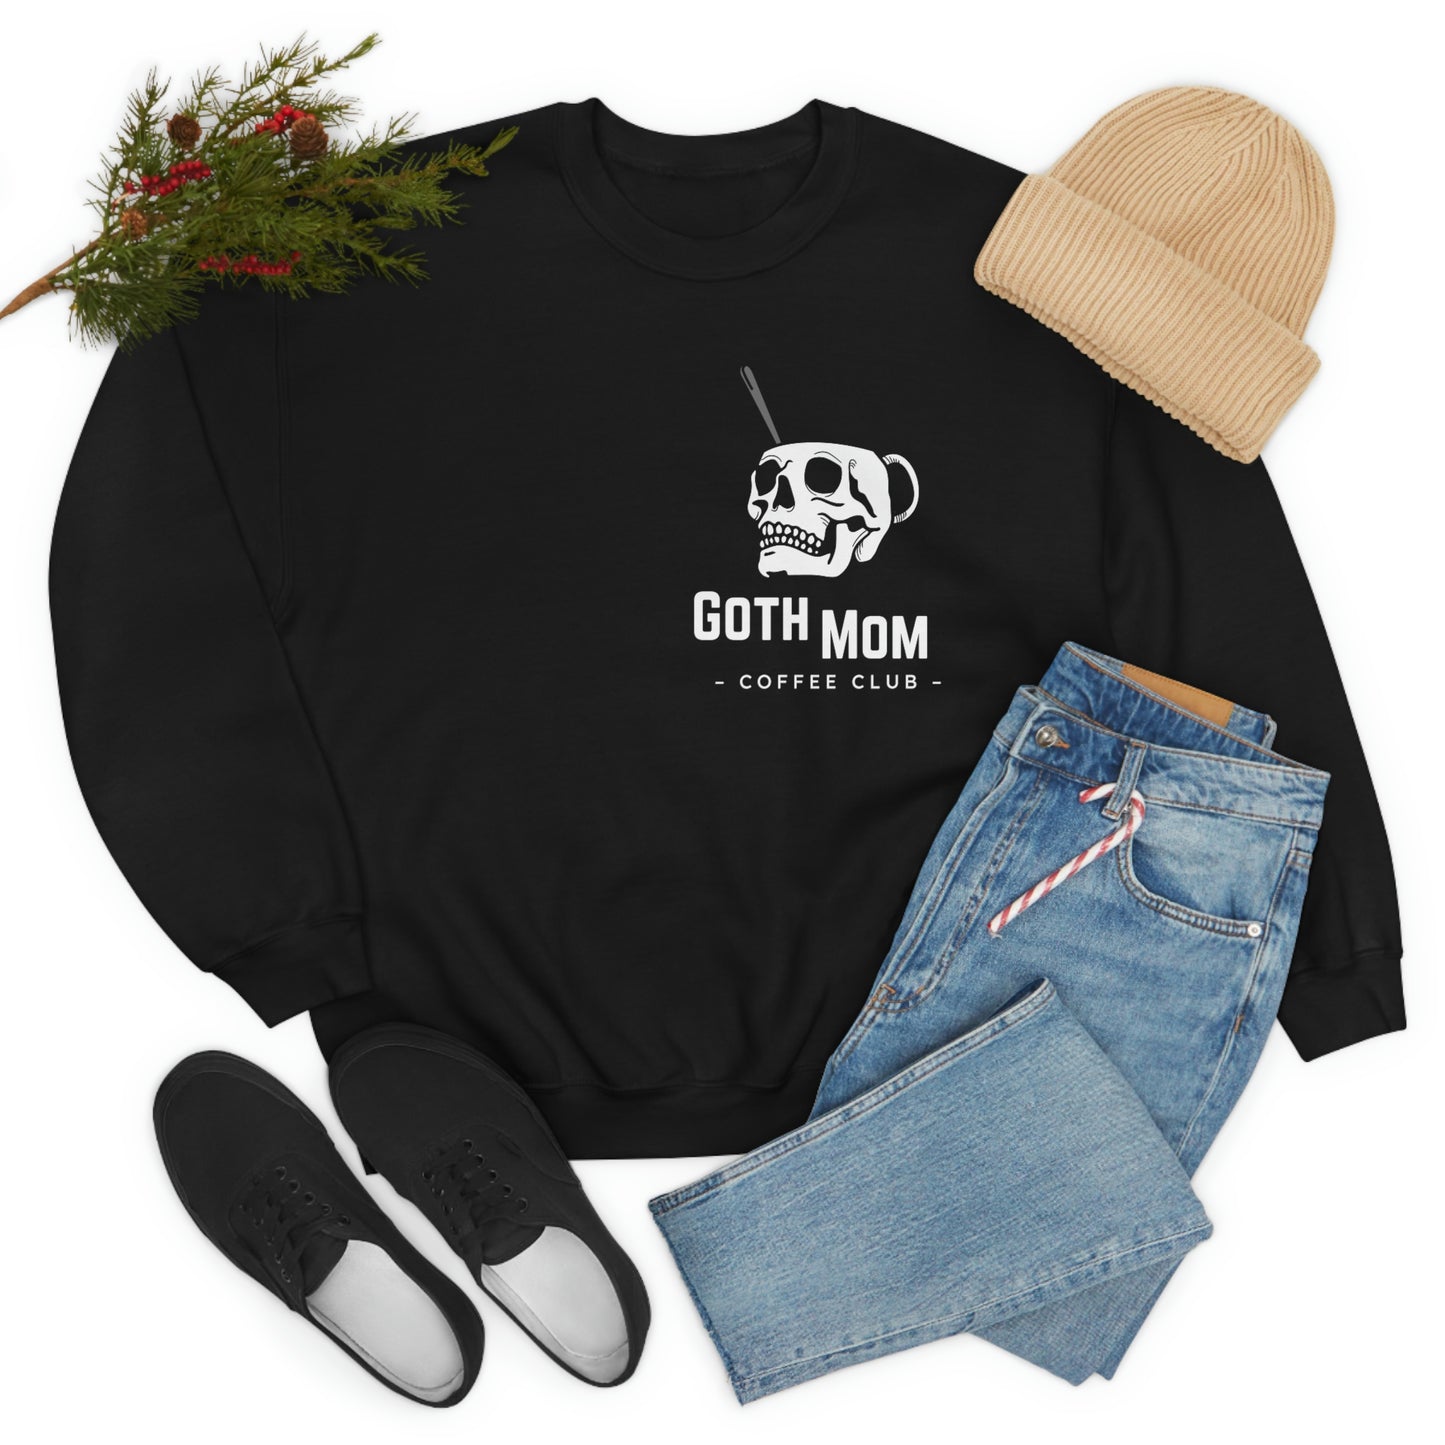 BLACK - Goth Mom Coffee Shop Unisex Crewneck Sweatshirt